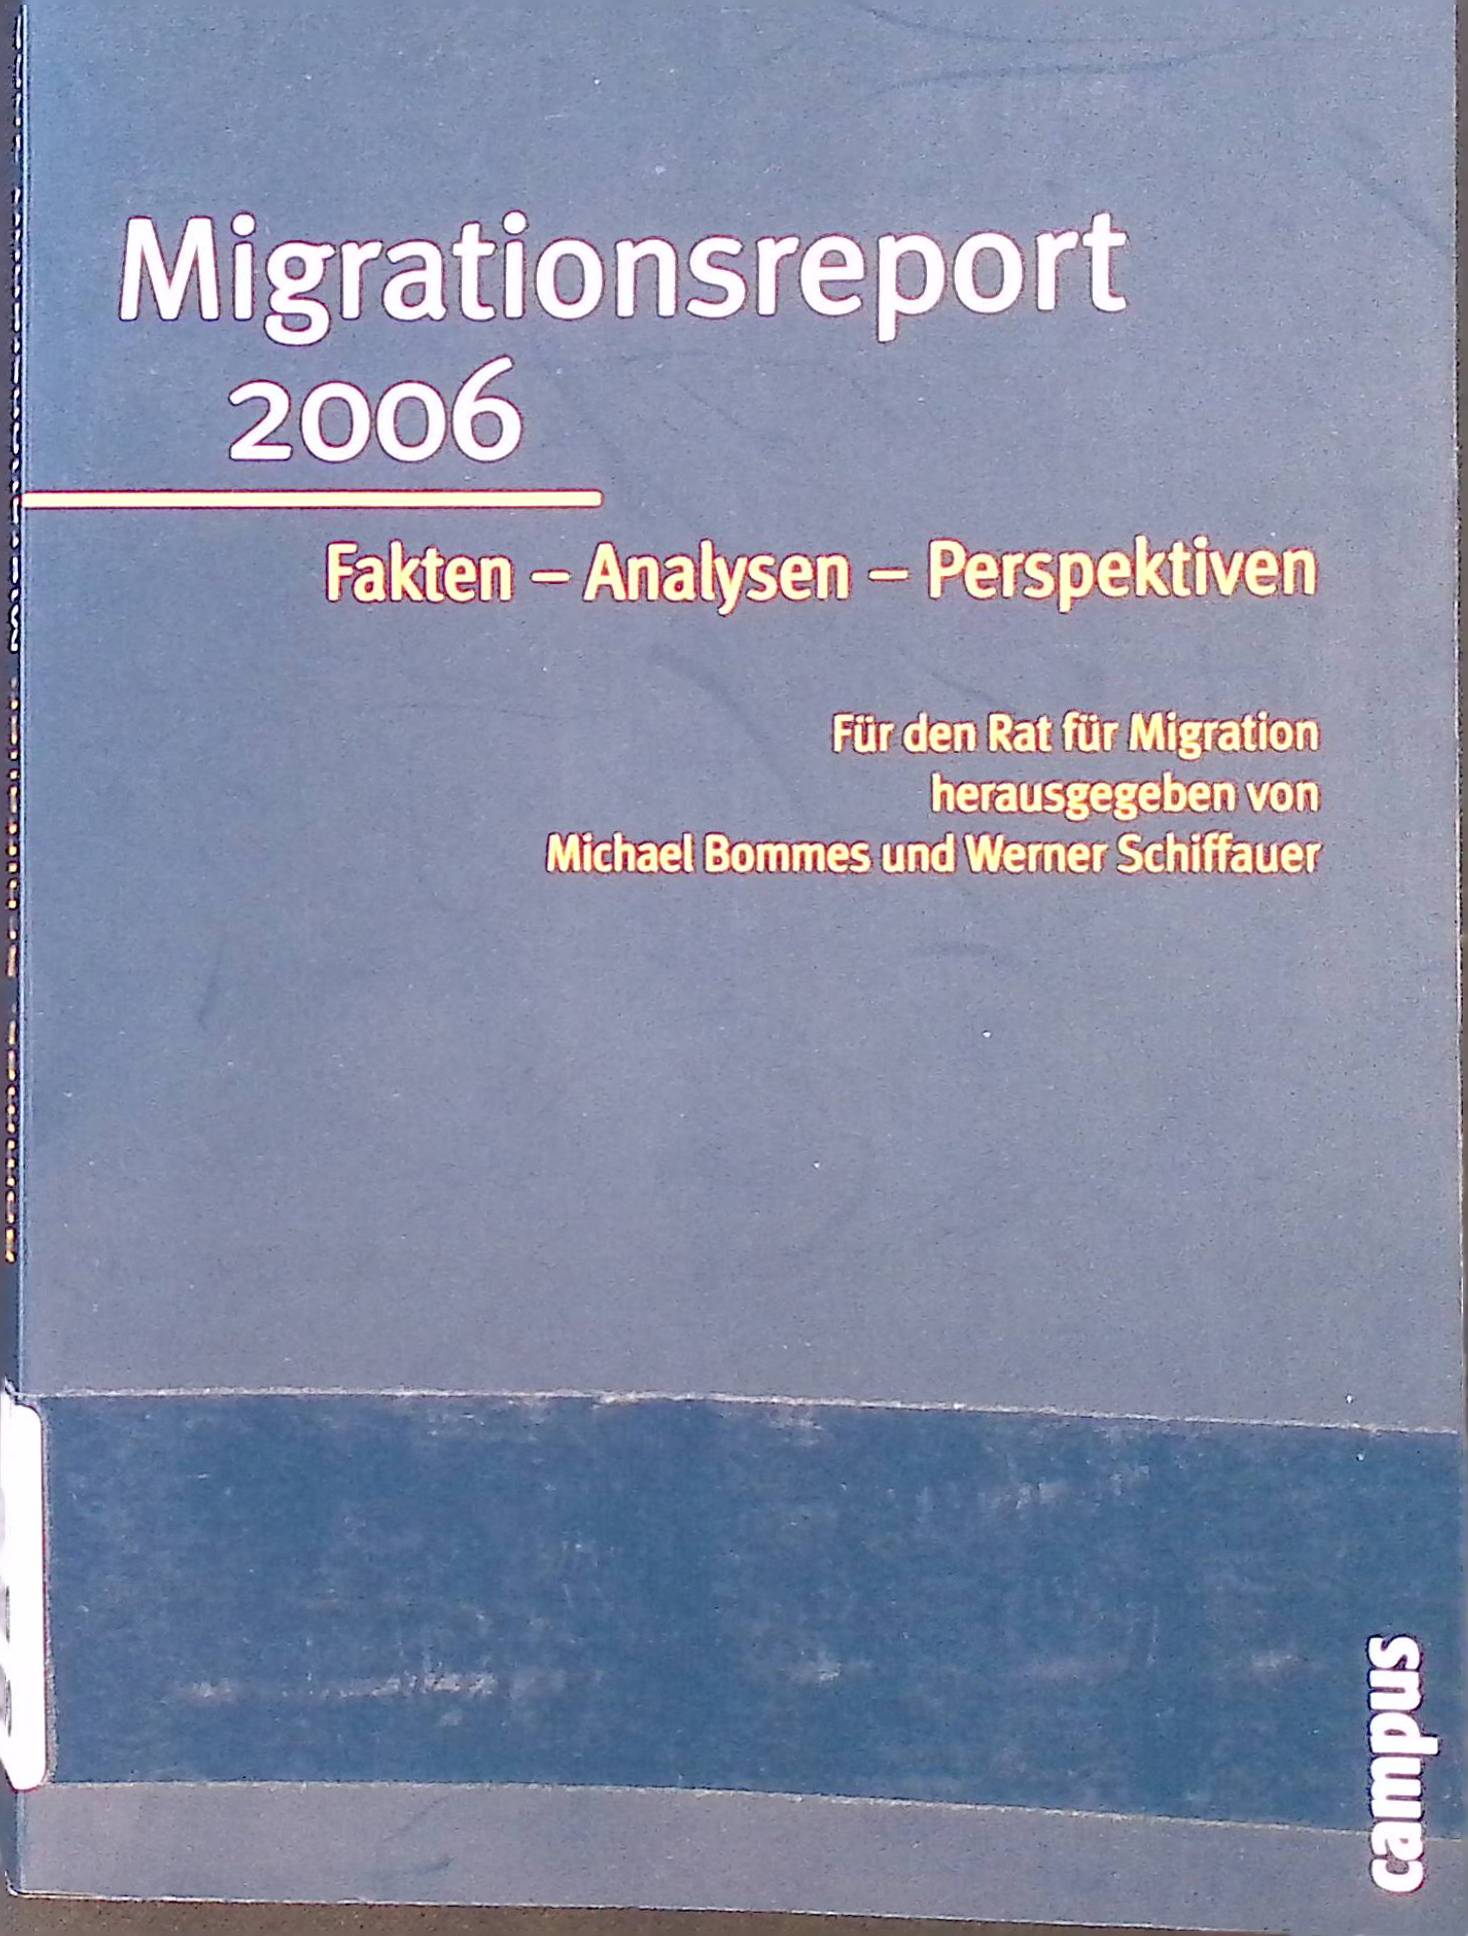 Migrationsreport 2006 Fakten - Analysen - Perspektiven. Für den Rat für Migration. - Bommes, Michael und Werner Schiffauer